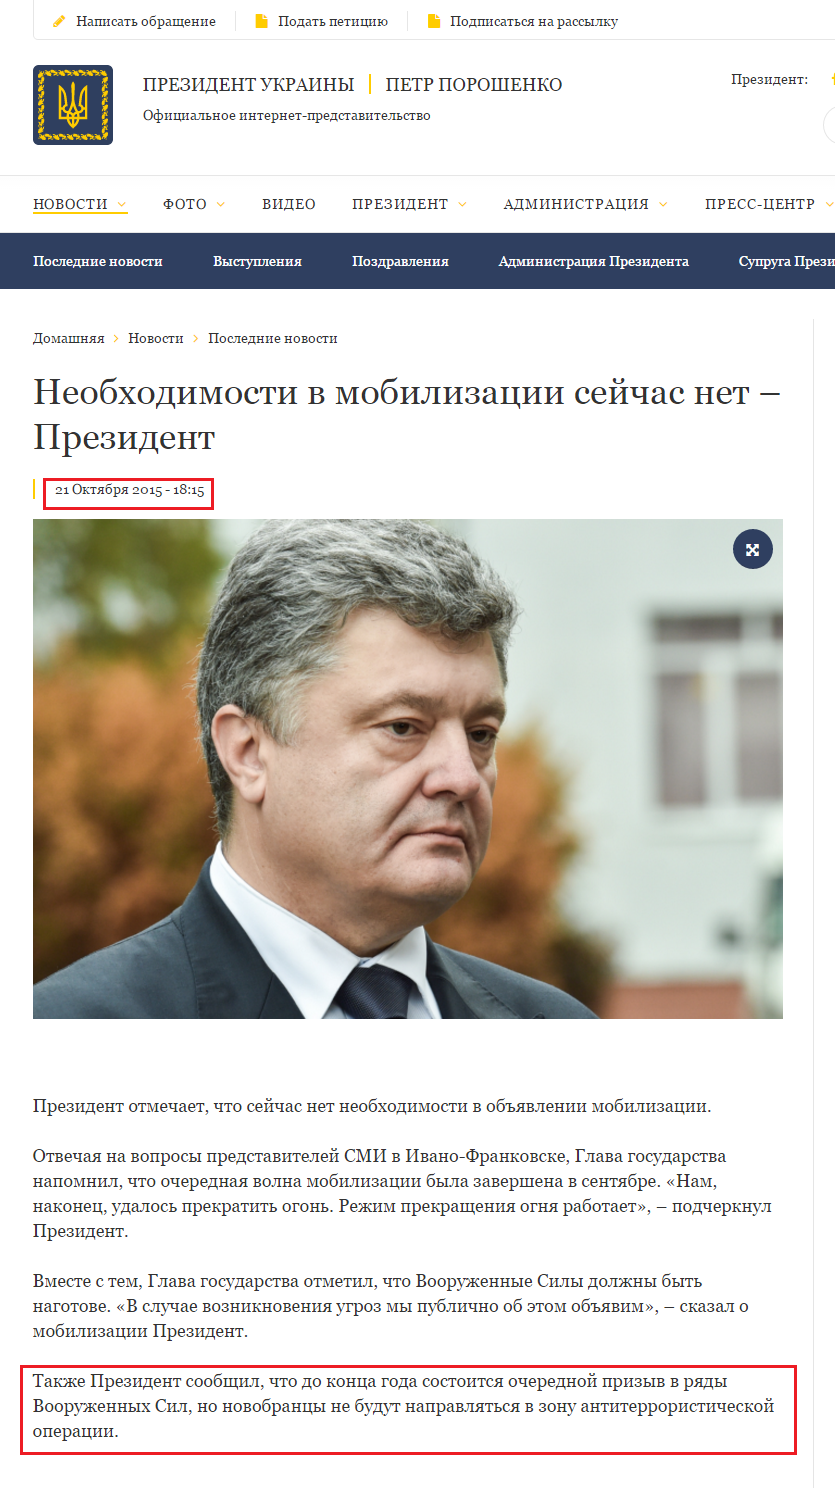 http://www.president.gov.ua/ru/news/neobhidnosti-u-mobilizaciyi-zaraz-nemaye-prezident-36185